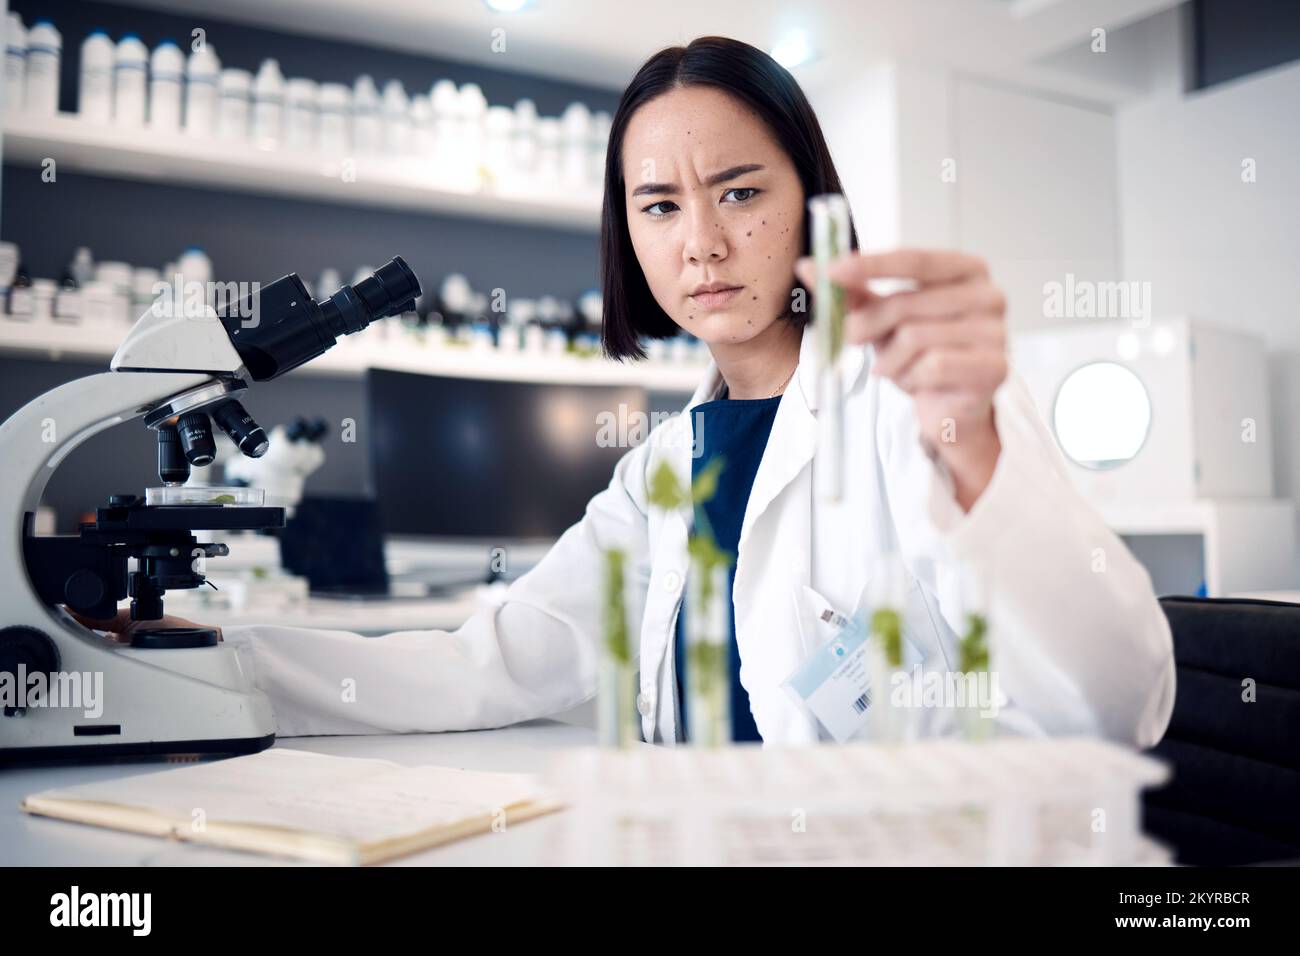 Wissenschaftlerin, Reagenzgläser und Labor für Pflanzen in der Landwirtschaft, Ernährungssicherheit oder gvo auf einem Tisch pro Mikroskop. Asiatischer Wissenschaftsexperte, Forschung oder Wachstum von Stockfoto